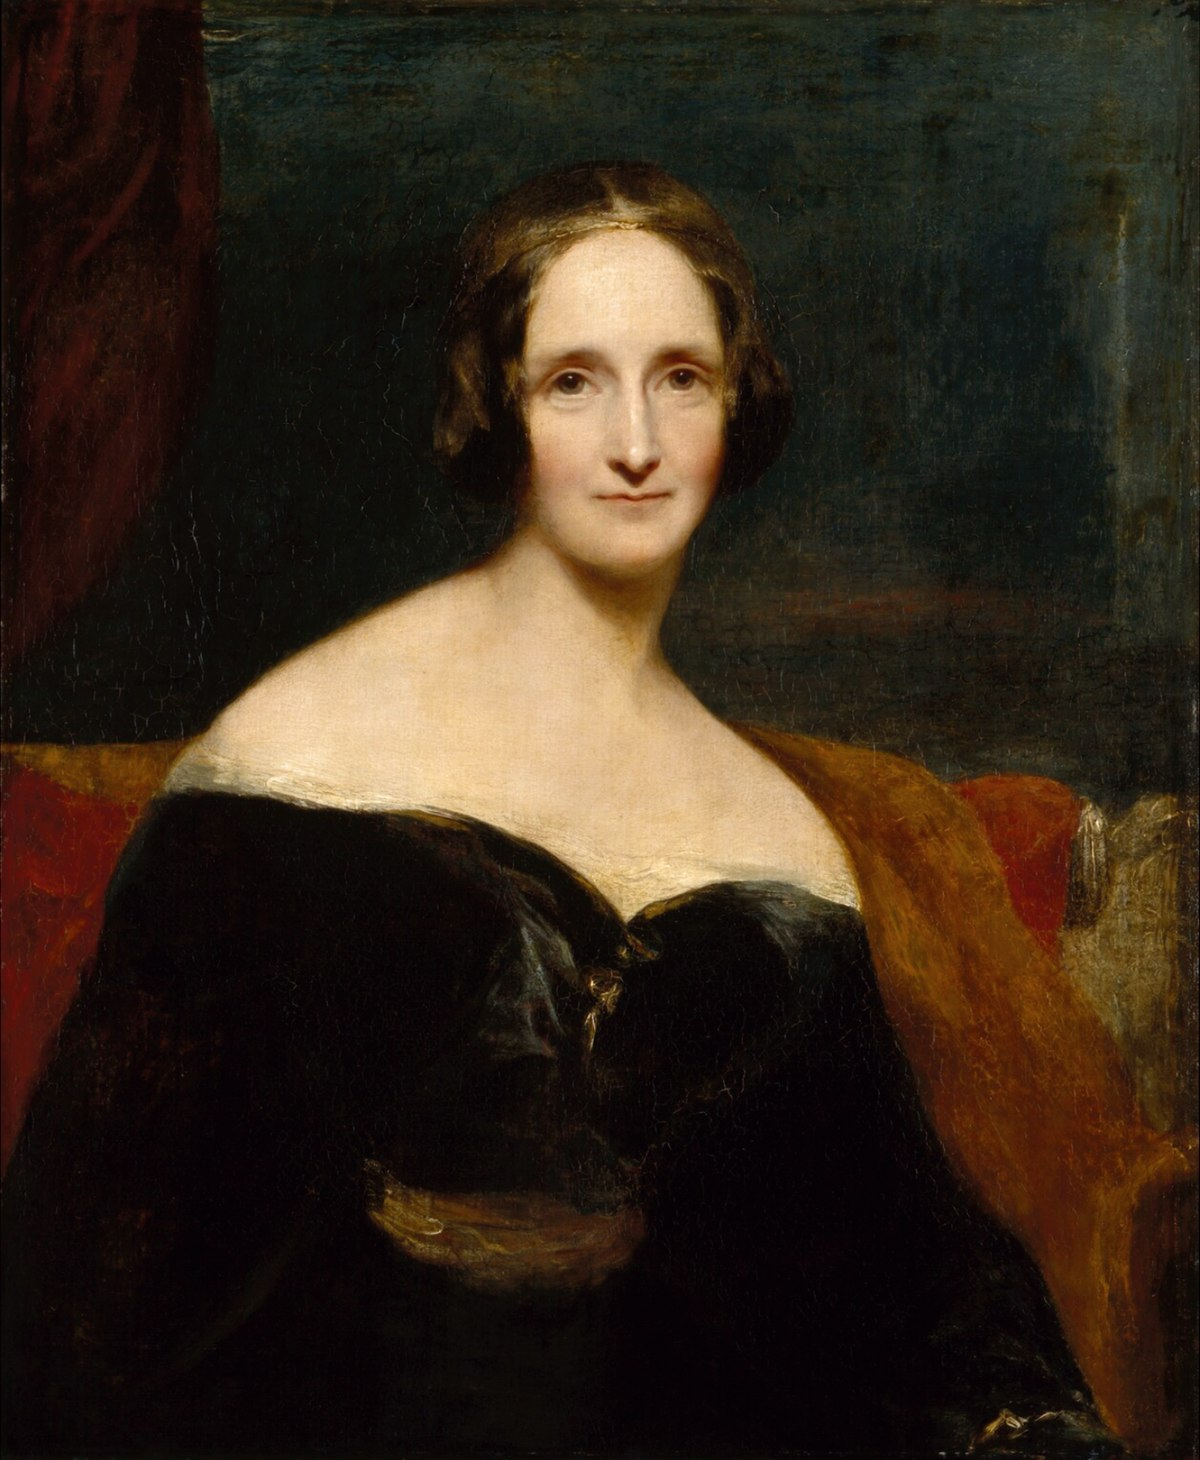 retrato de Mary Shelley, autora de Frankenstein